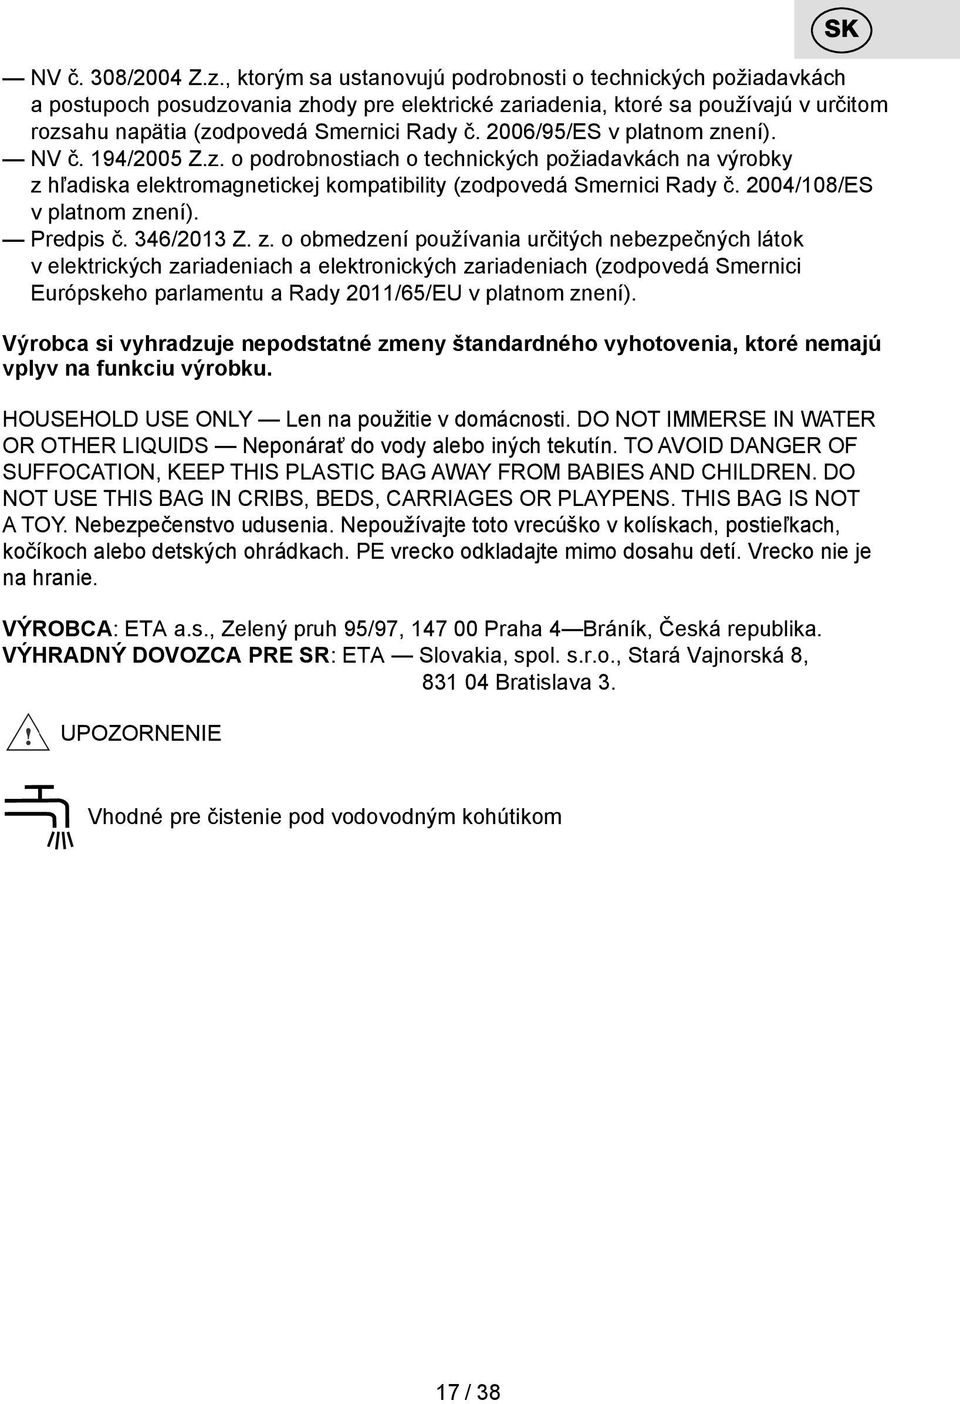 2006/95/ES v platnom znení). NV č. 194/2005 Z.z. o podrobnostiach o technických požiadavkách na výrobky z hľadiska elektromagnetickej kompatibility (zodpovedá Smernici Rady č.